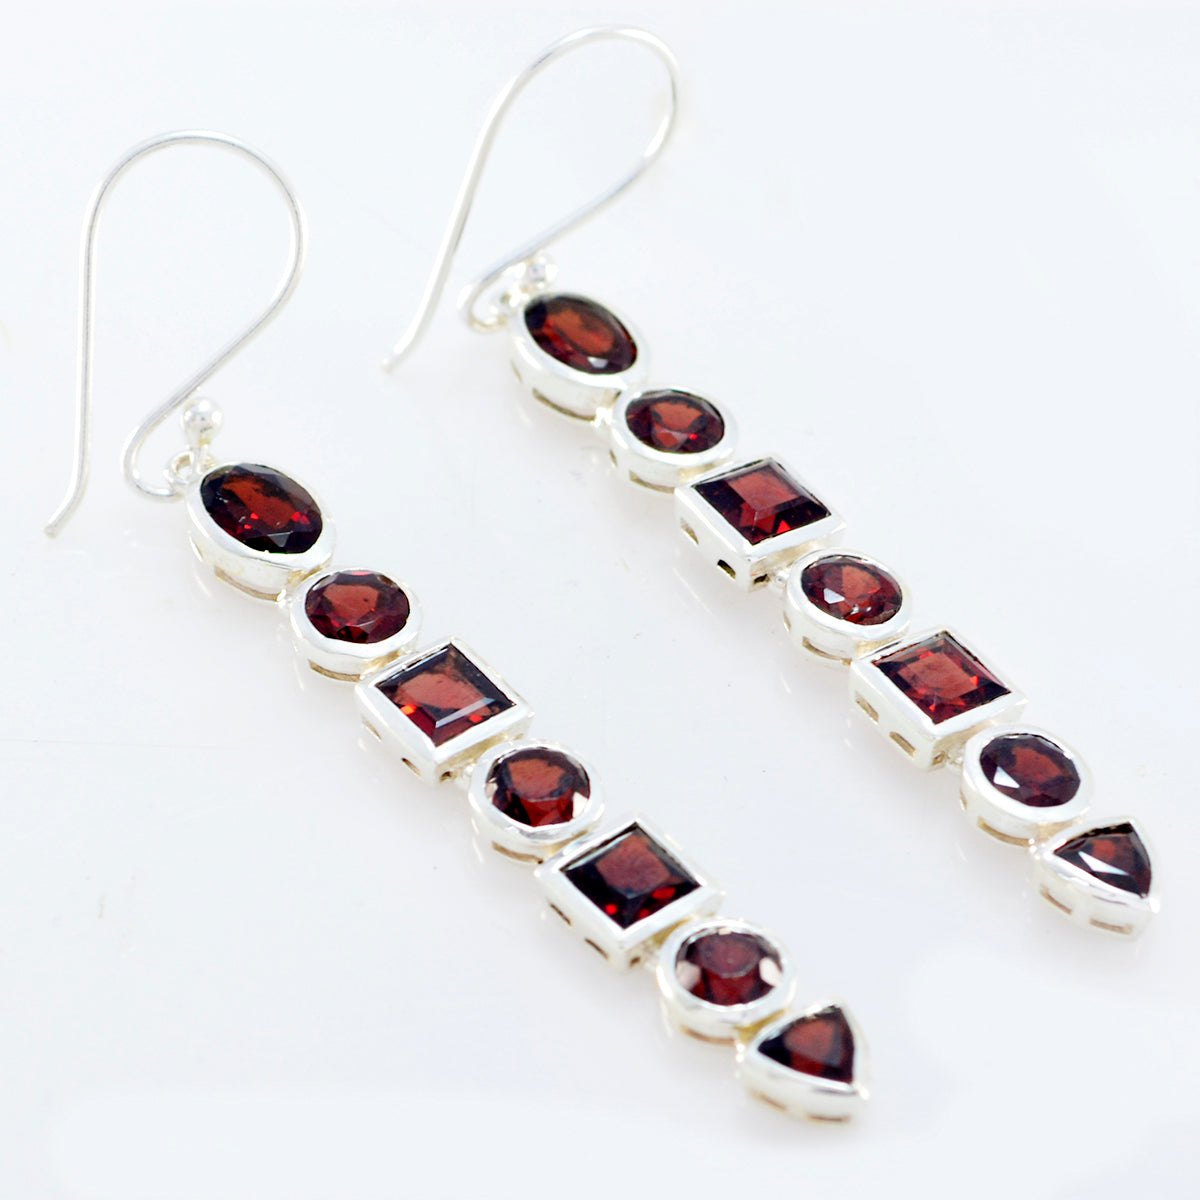 Riyo Genuine Gems multi shape Faceted Red Garnet Silver Earrings gift for mom birthday